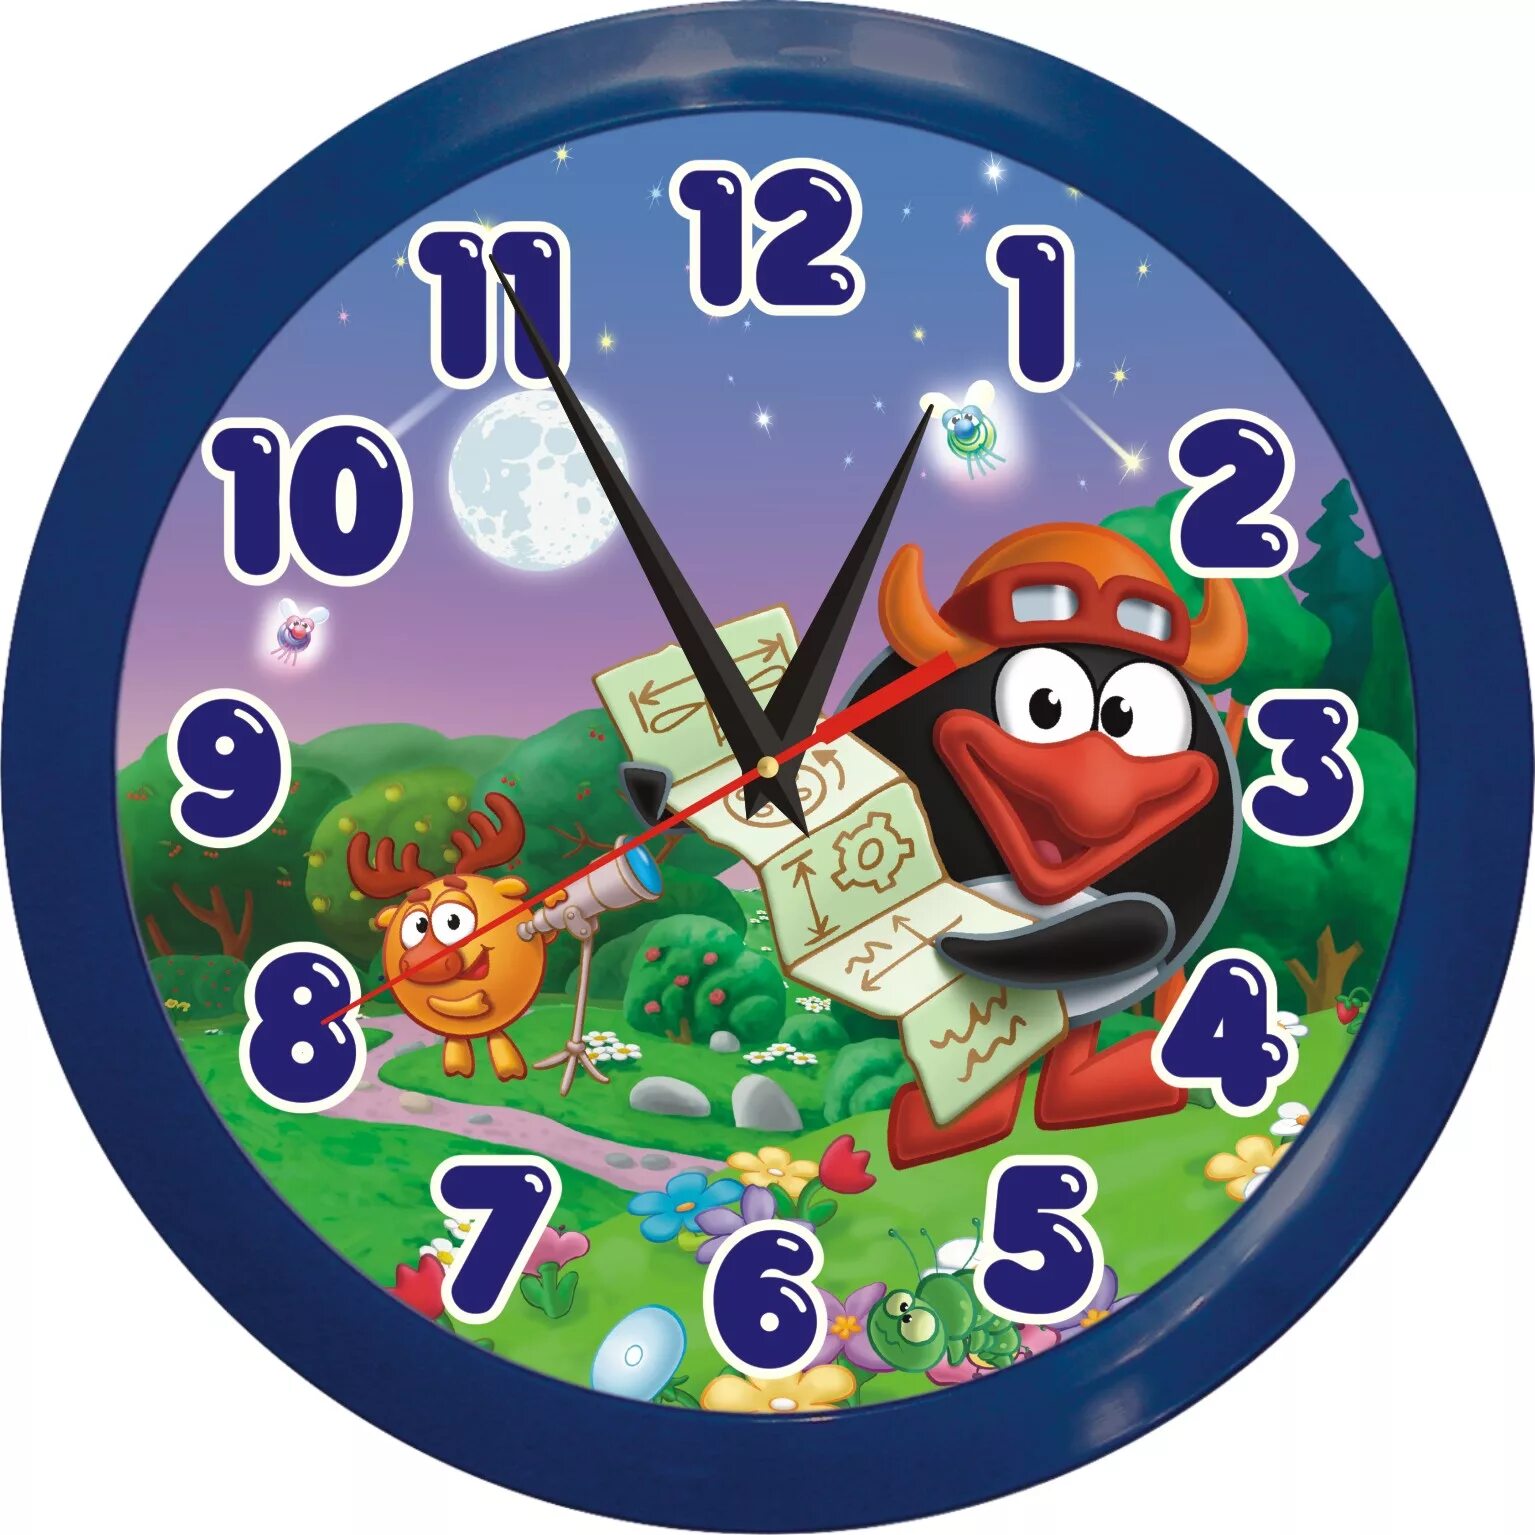 Картинка часов. Часы со стрелками для детей. Смешарики часы. Циферблат для детских часов. Циферблат часов для детей.